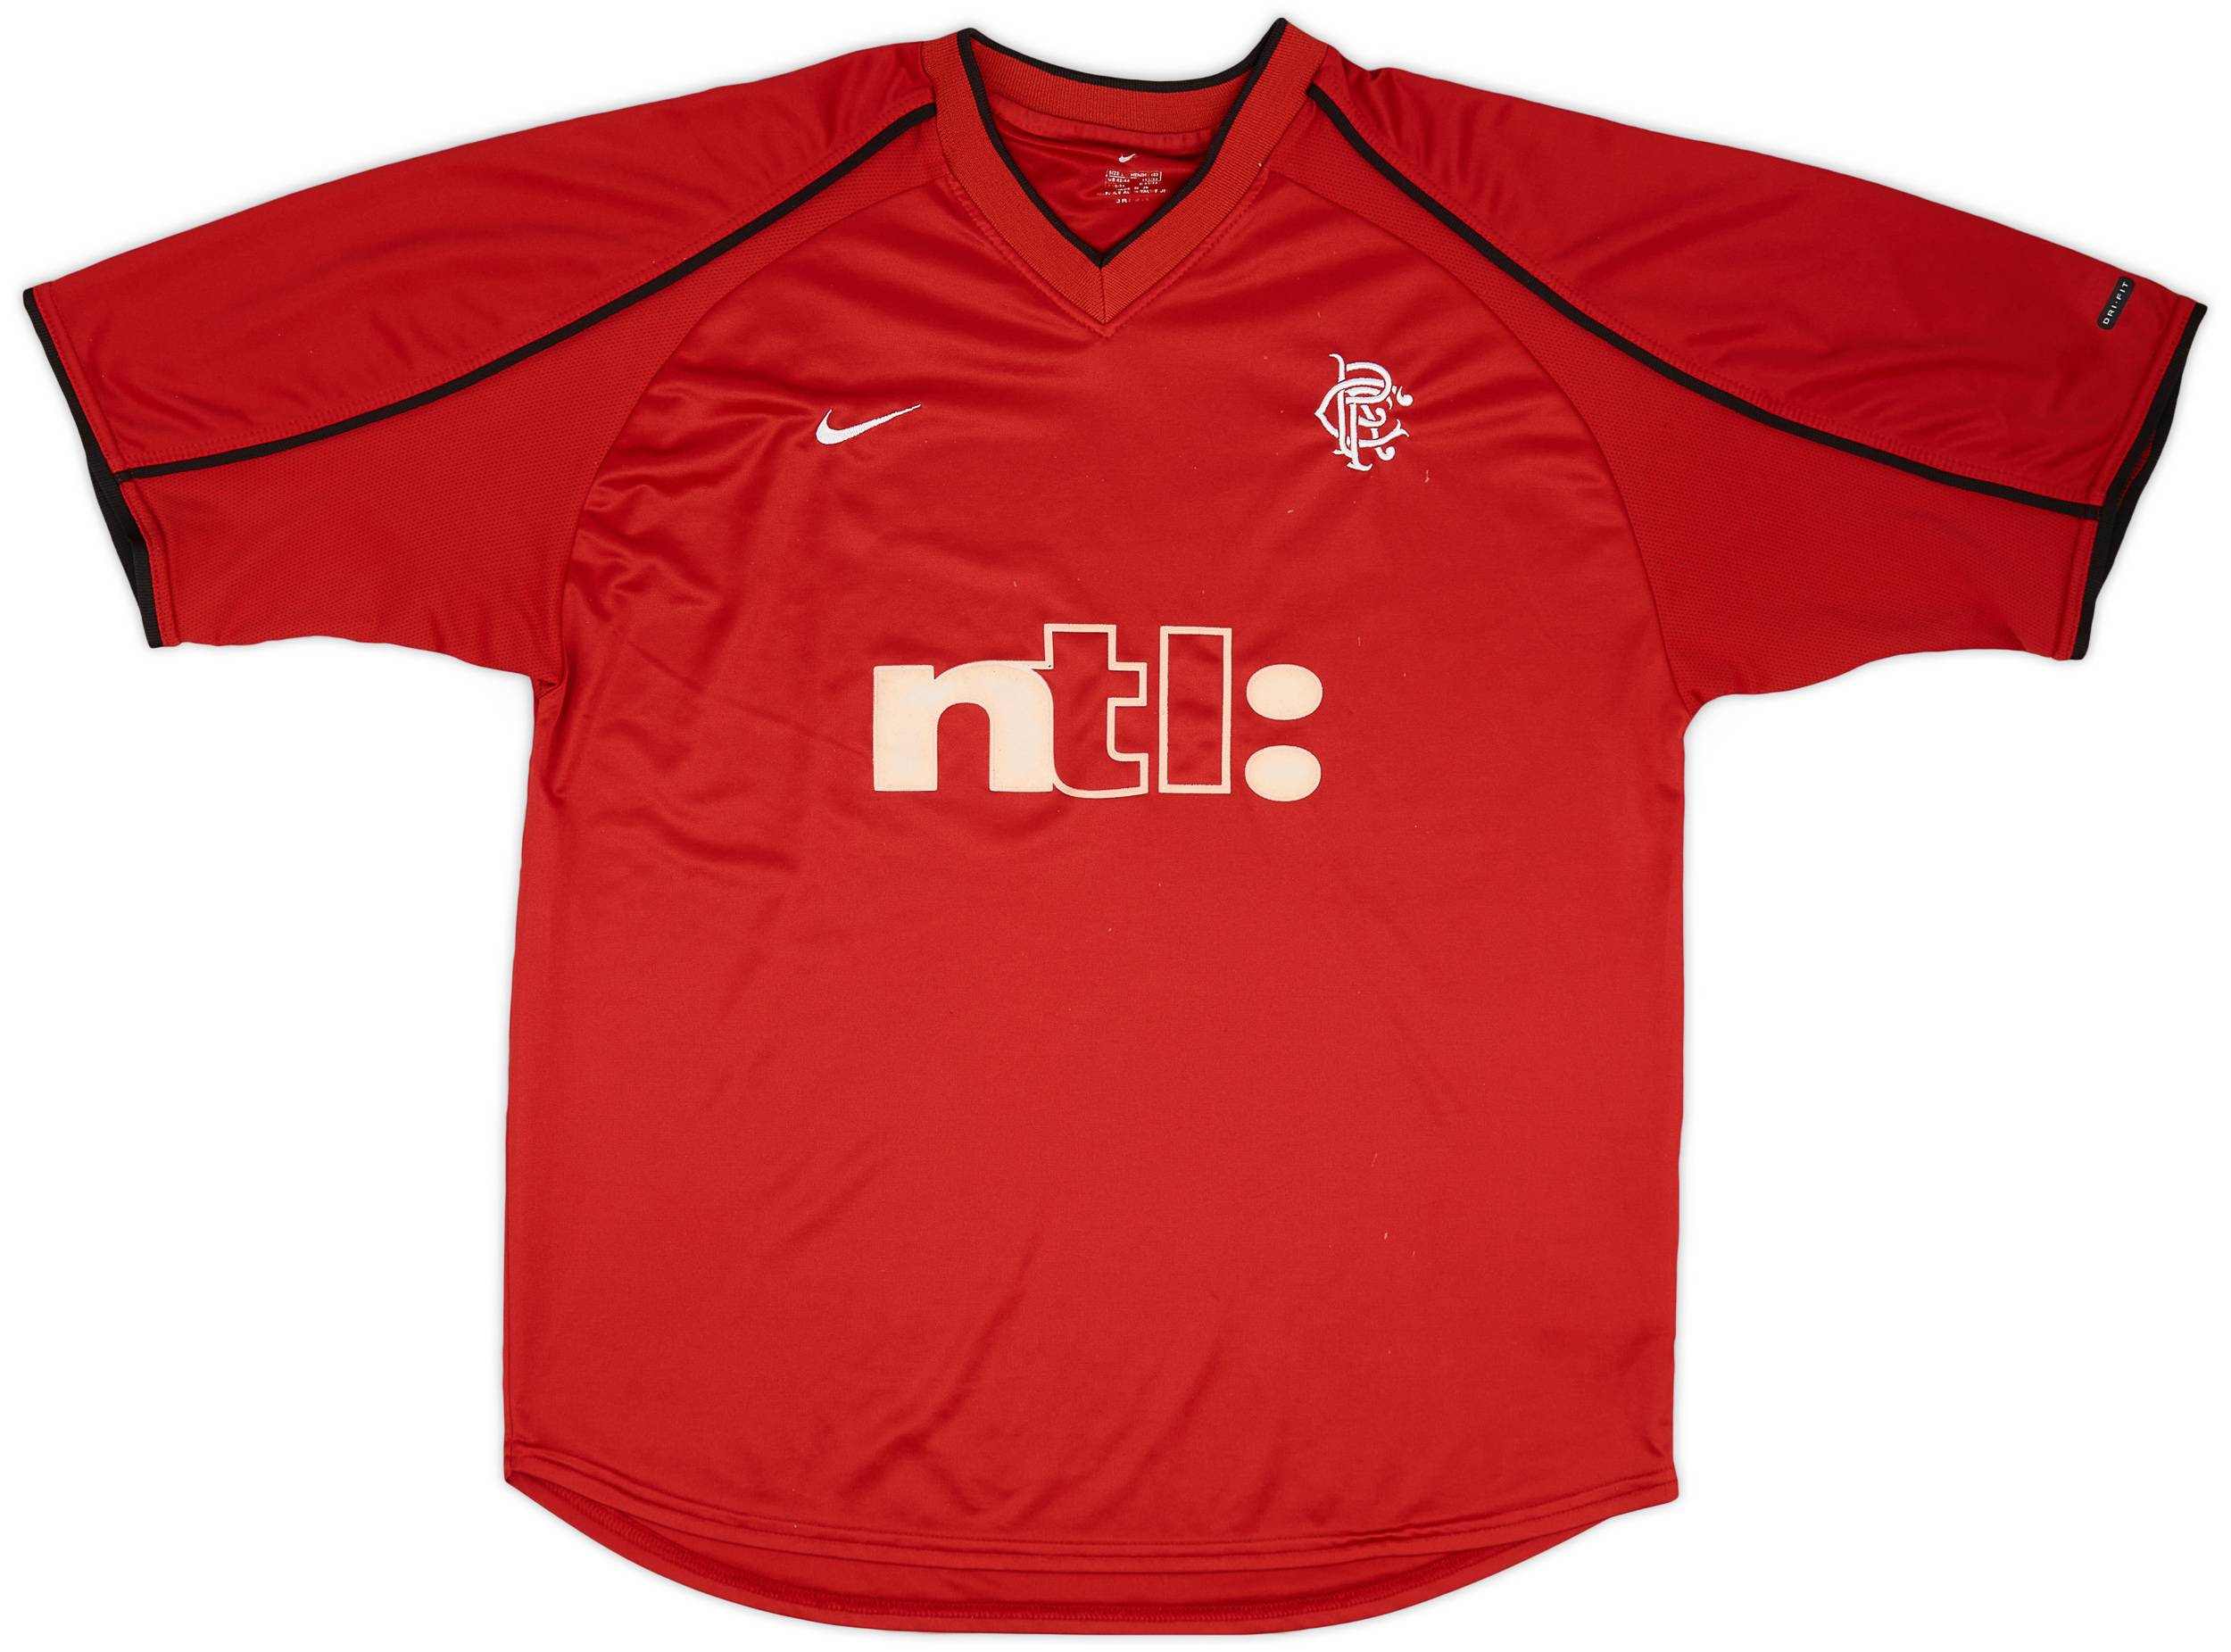 2000-01 Rangers Third Shirt - 5/10 - (L)